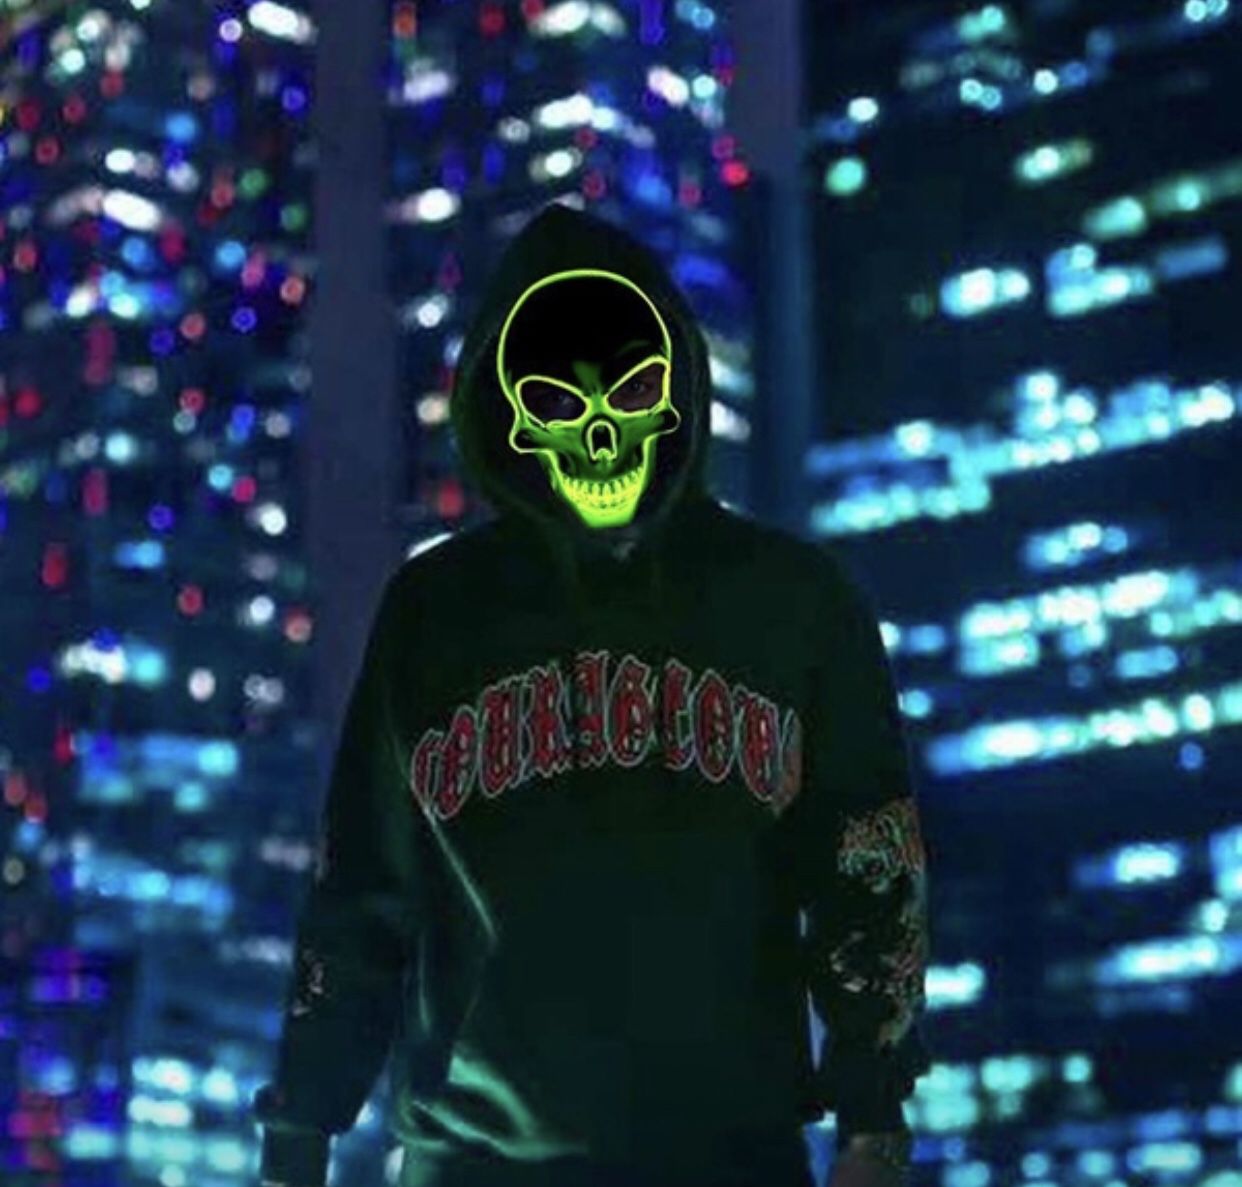 New unisex LED Halloween skull mask ; LED color is green